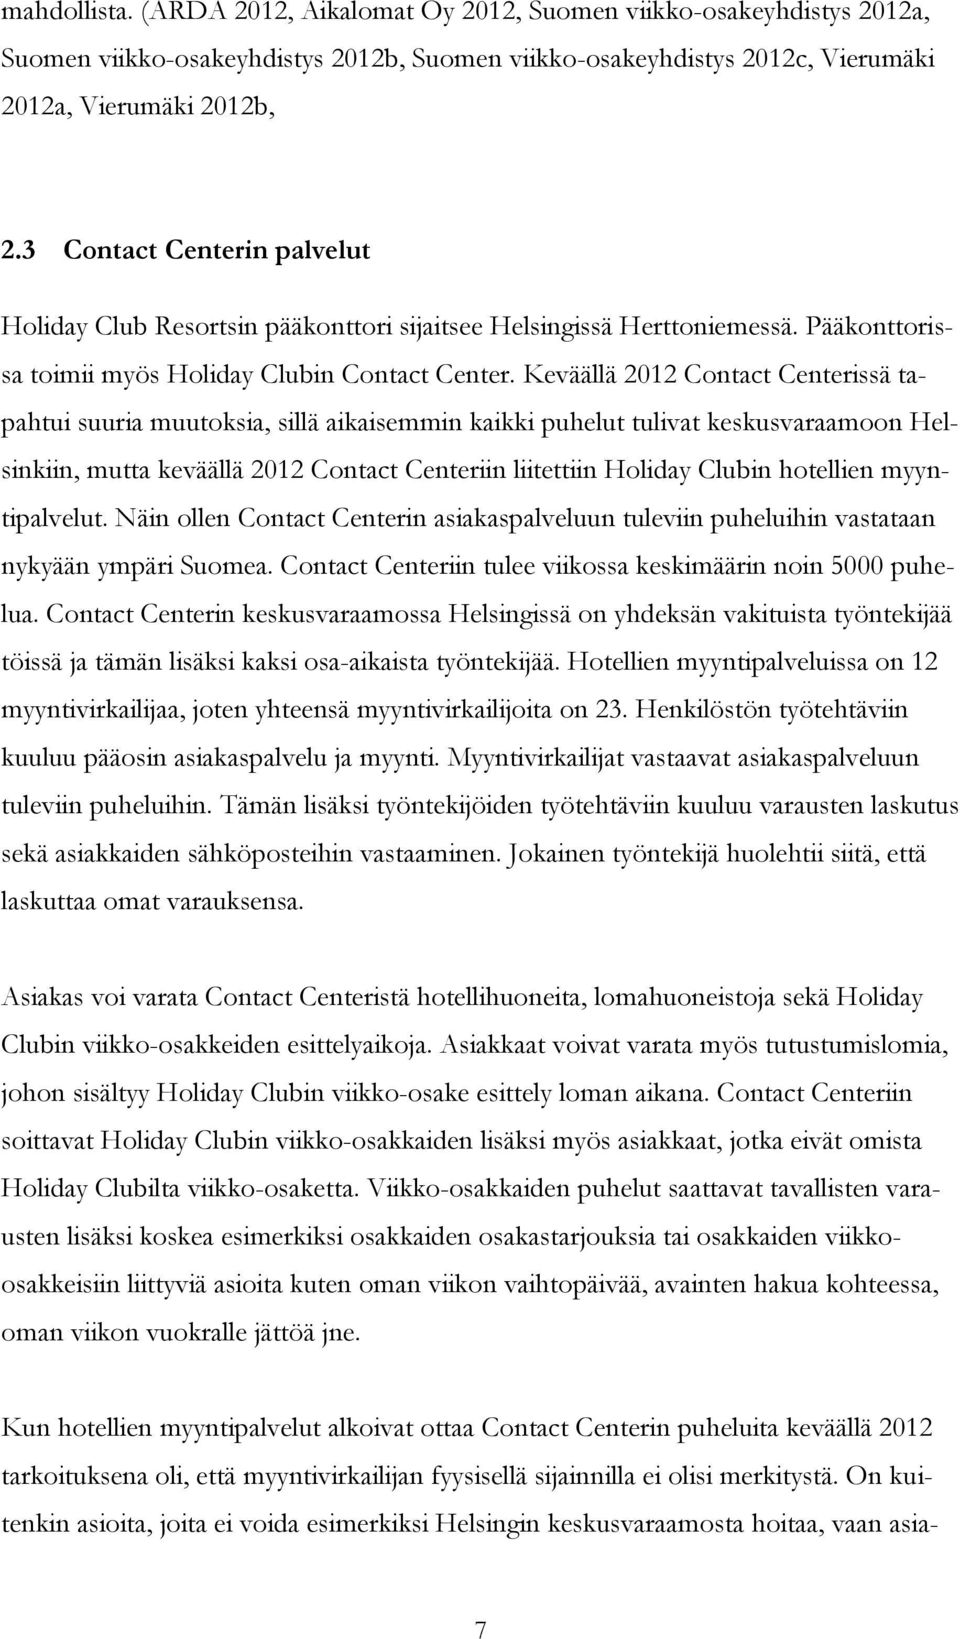 Keväällä 2012 Contact Centerissä tapahtui suuria muutoksia, sillä aikaisemmin kaikki puhelut tulivat keskusvaraamoon Helsinkiin, mutta keväällä 2012 Contact Centeriin liitettiin Holiday Clubin